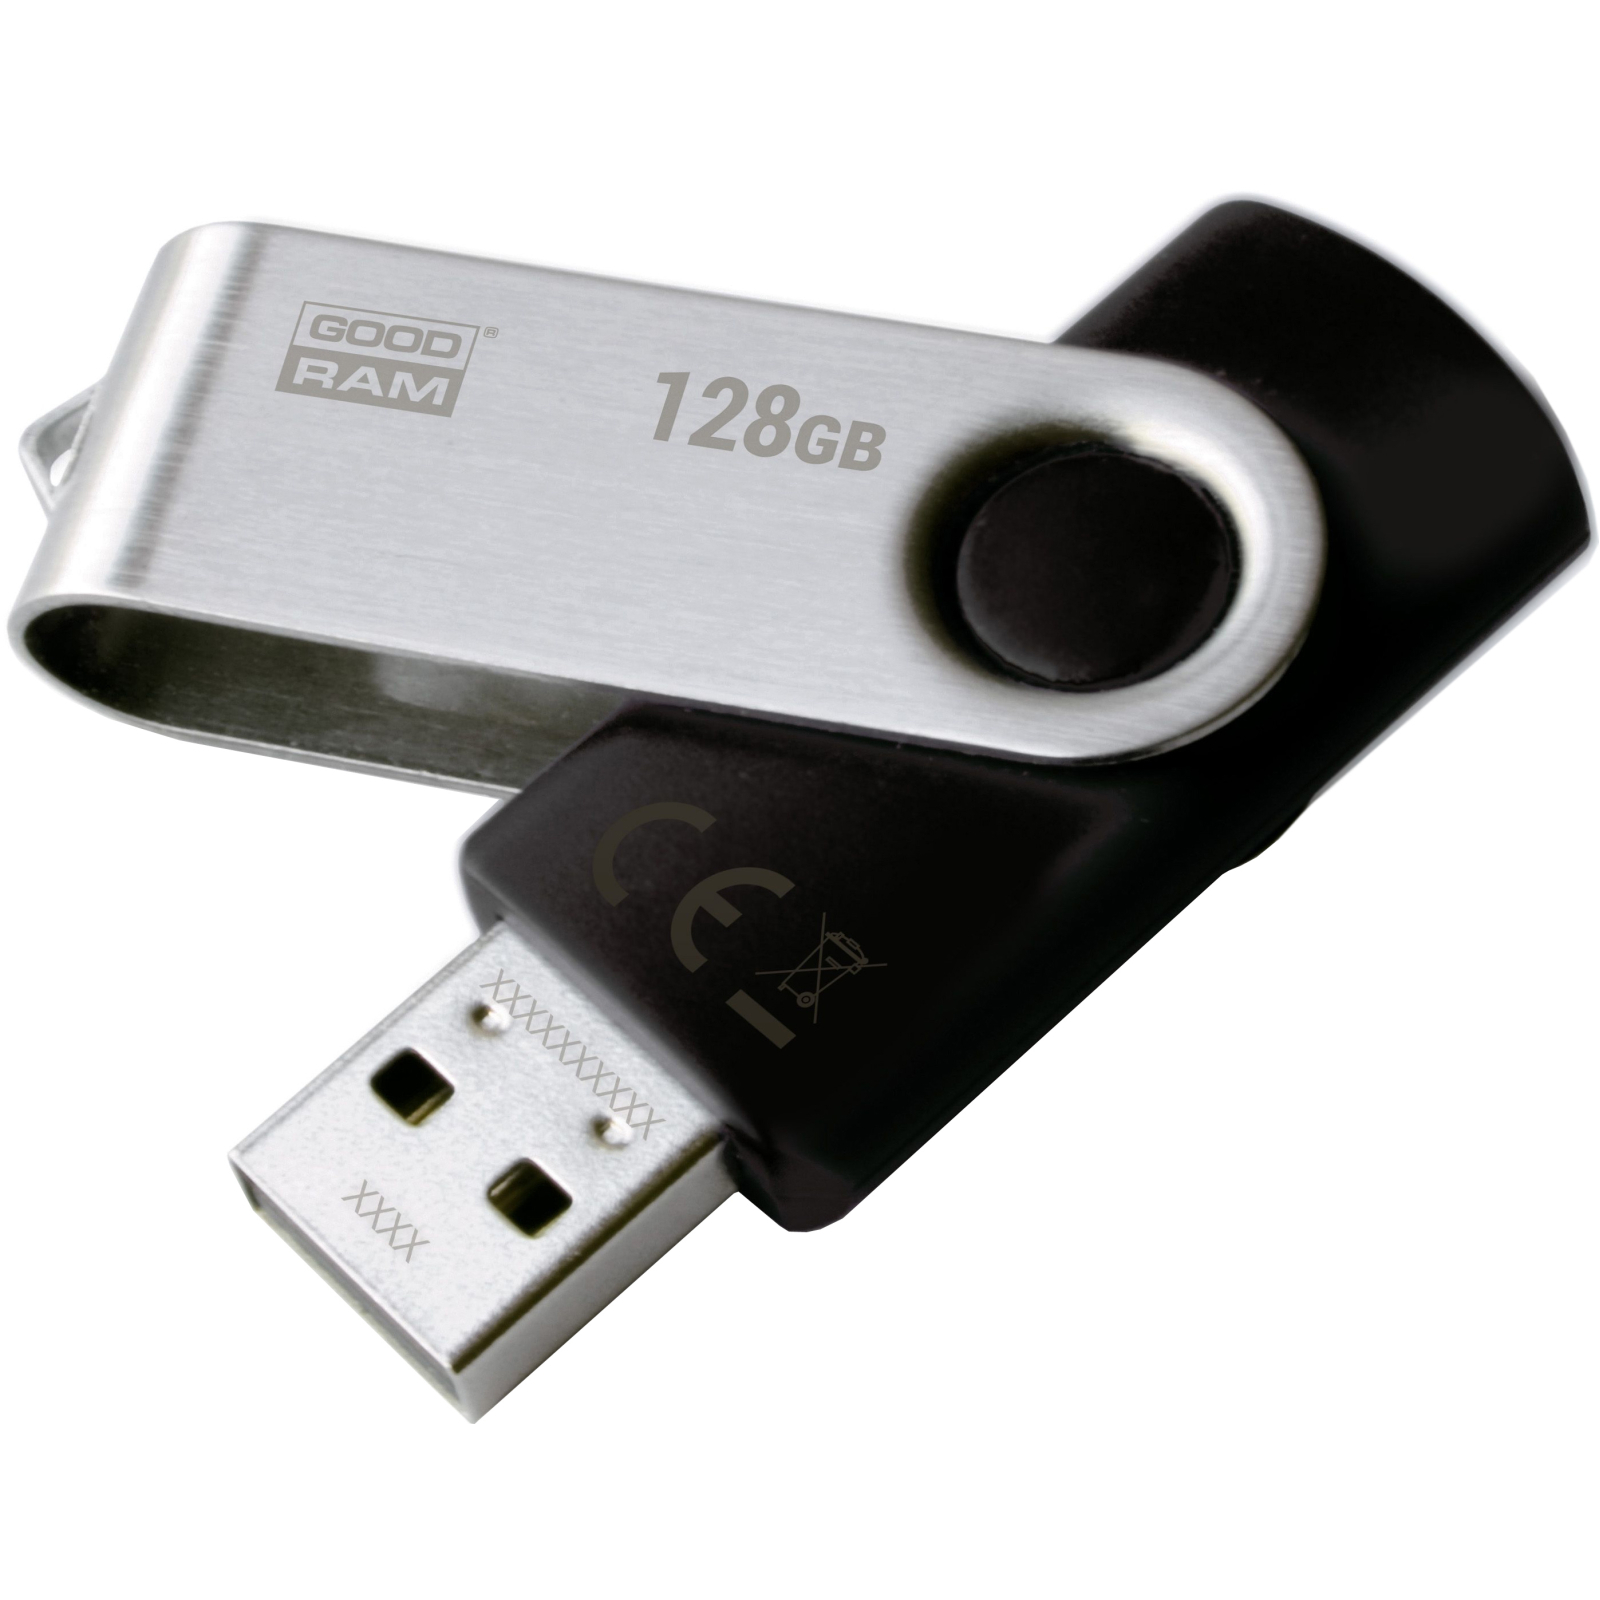 USB флеш накопитель Goodram 64GB Twister Black USB 2.0 (UTS2-0640K0R11)